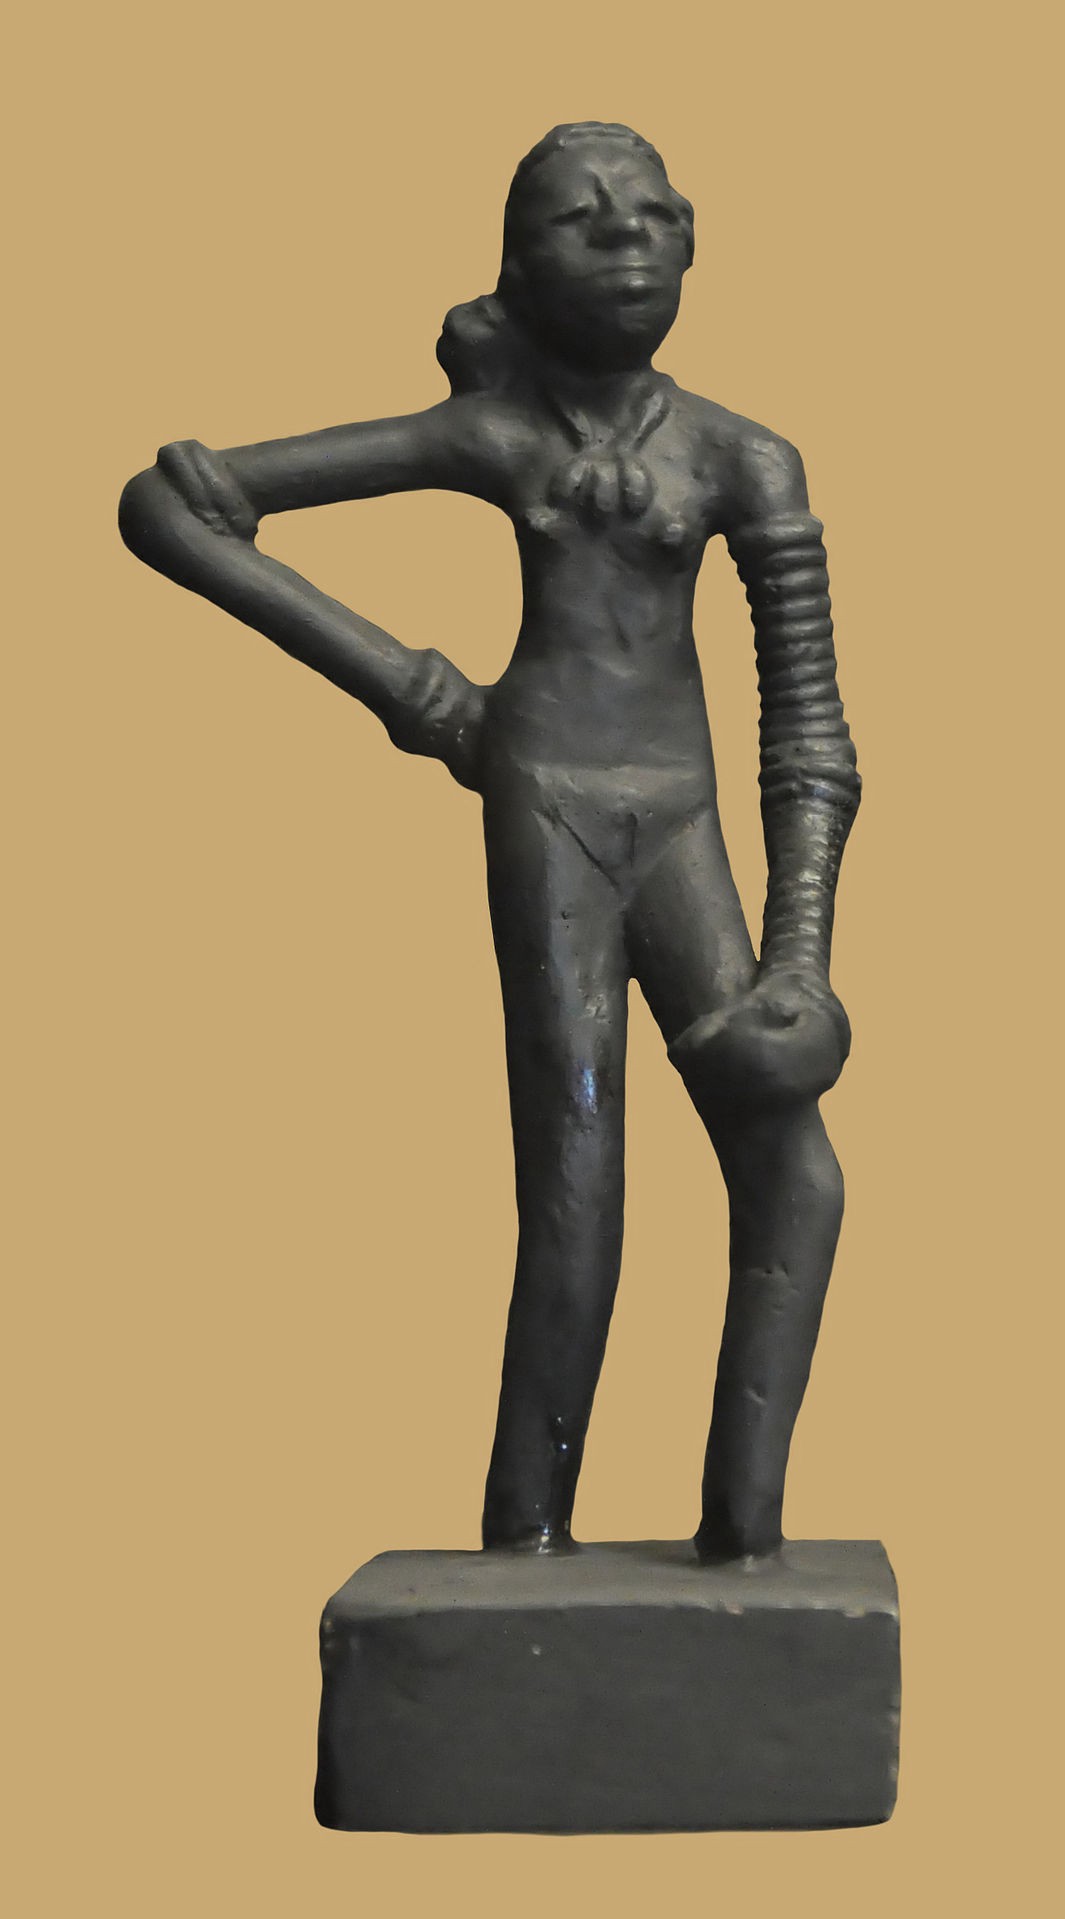 The bronze image of dancing girl sculpture